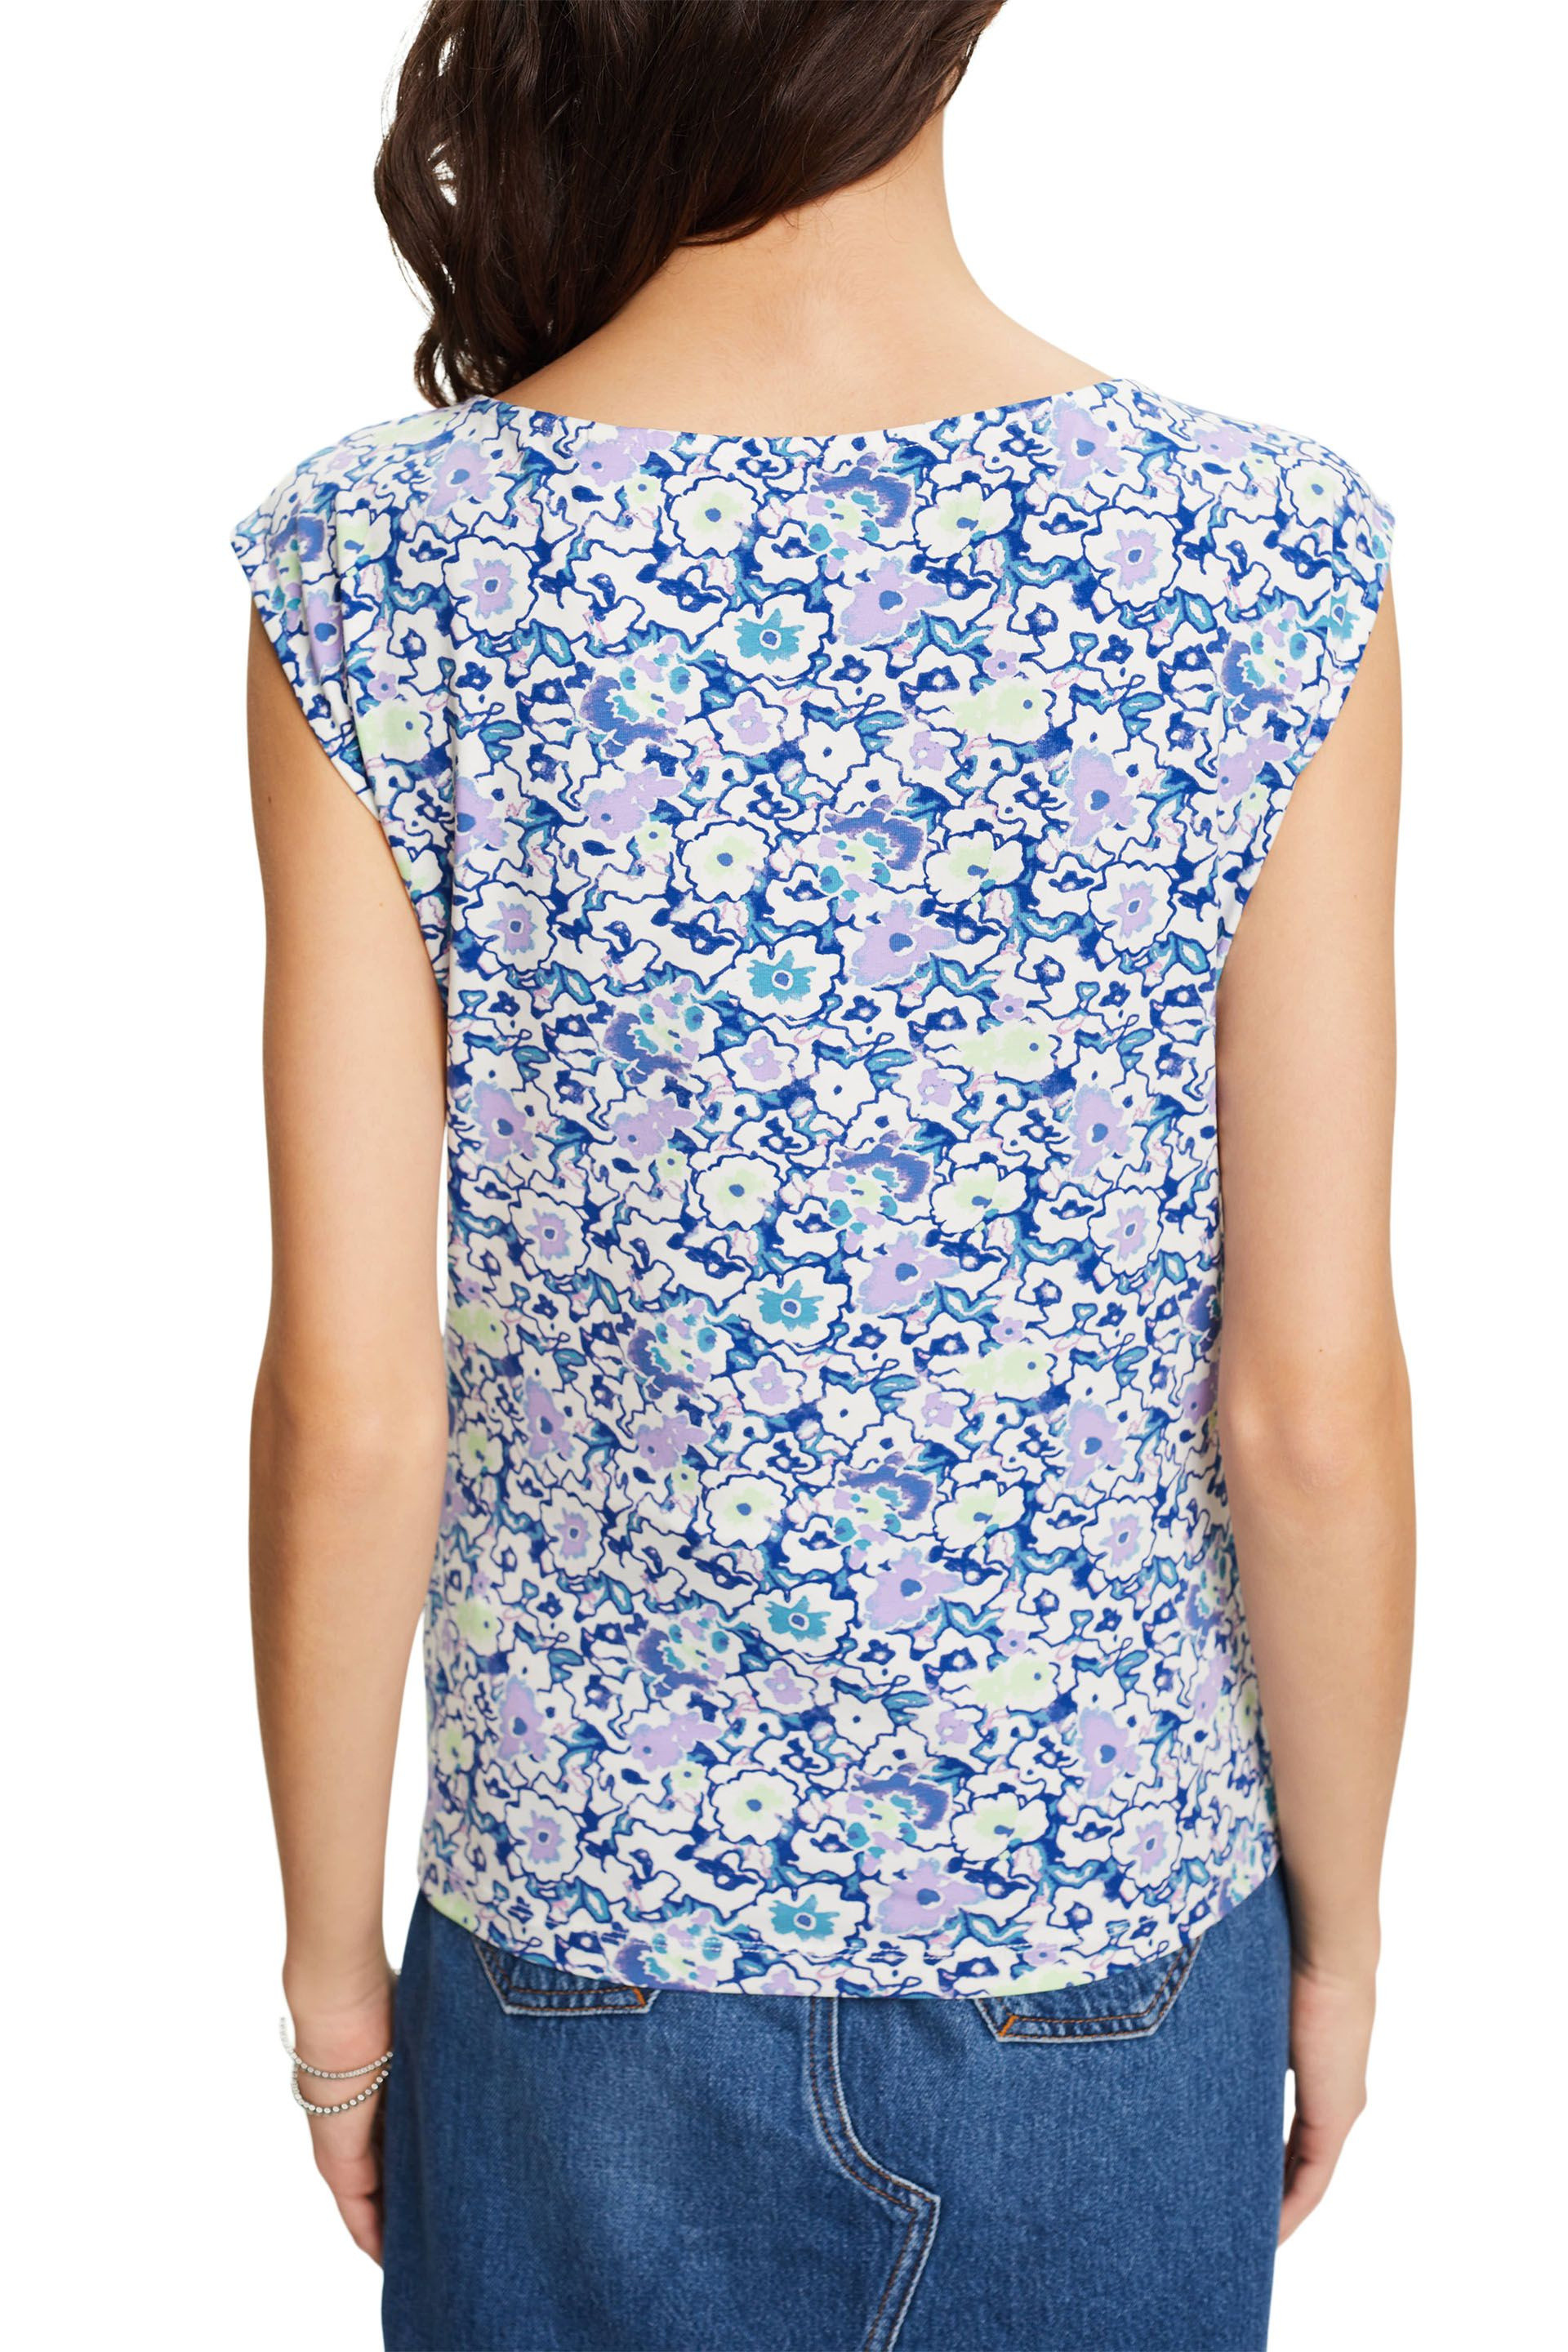 Esprit - Floral print T-shirt, Blue, large image number 3